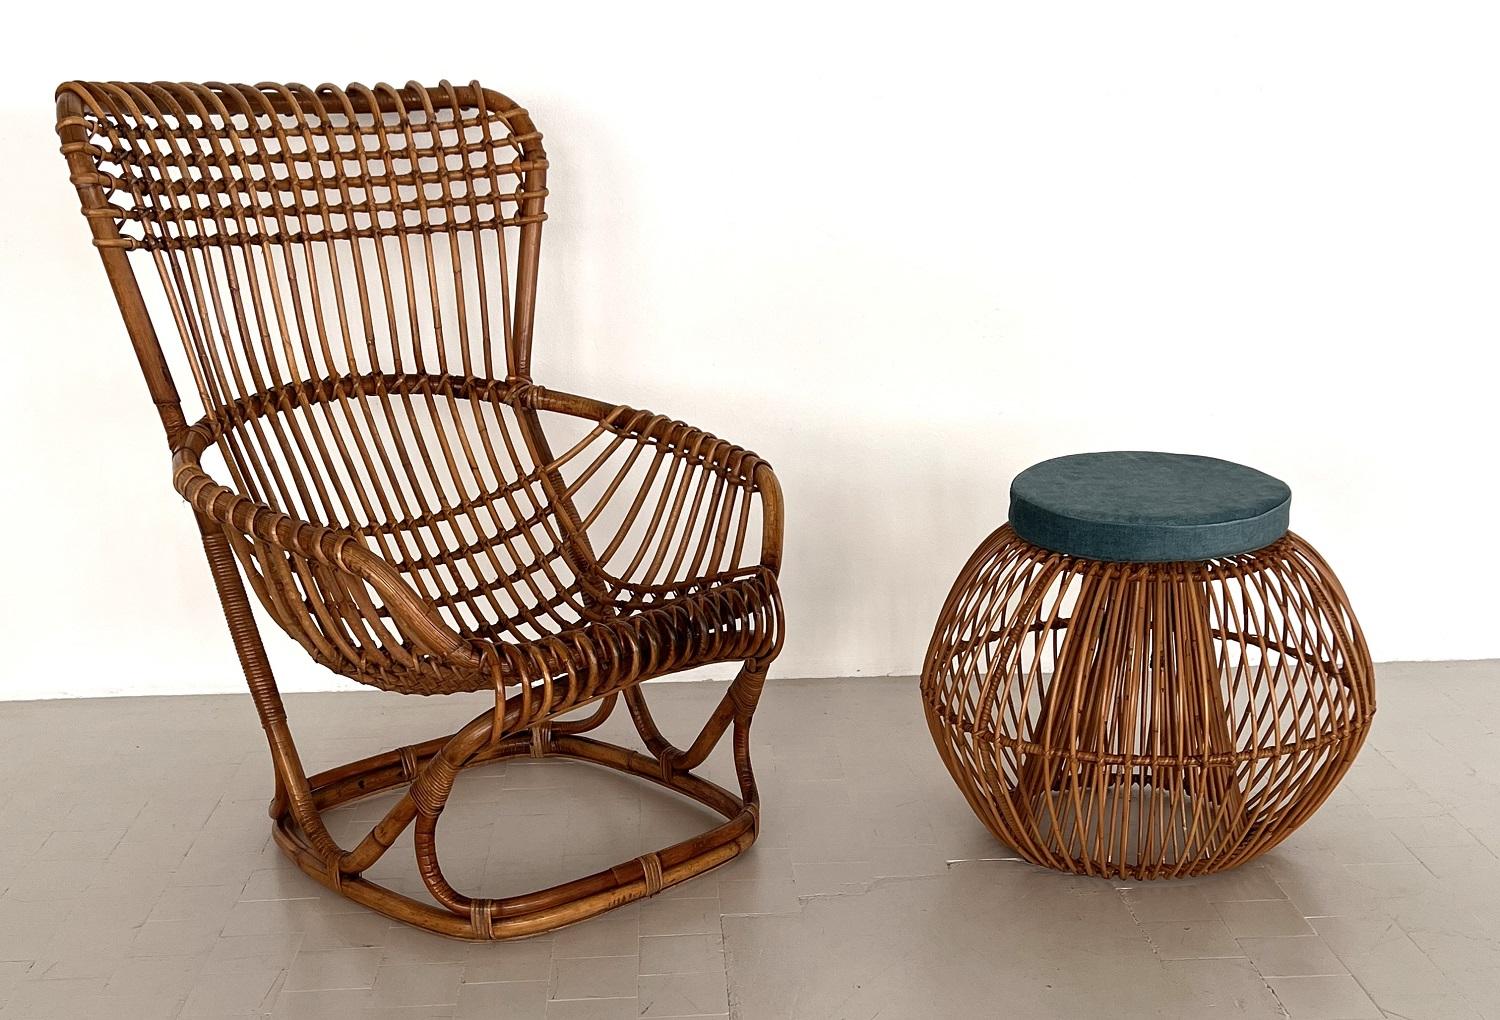 Schöner Hocker, handgefertigt aus Bambus, in den 60er Jahren, Frankreich.
Entworfen von Janine Abraham und Dirk-Jan Rol.
Der Hocker ist in einem außergewöhnlich guten, stabilen Zustand.
Ein neues Sitzkissen wurde aus pflegeleichtem hellblauem Samt